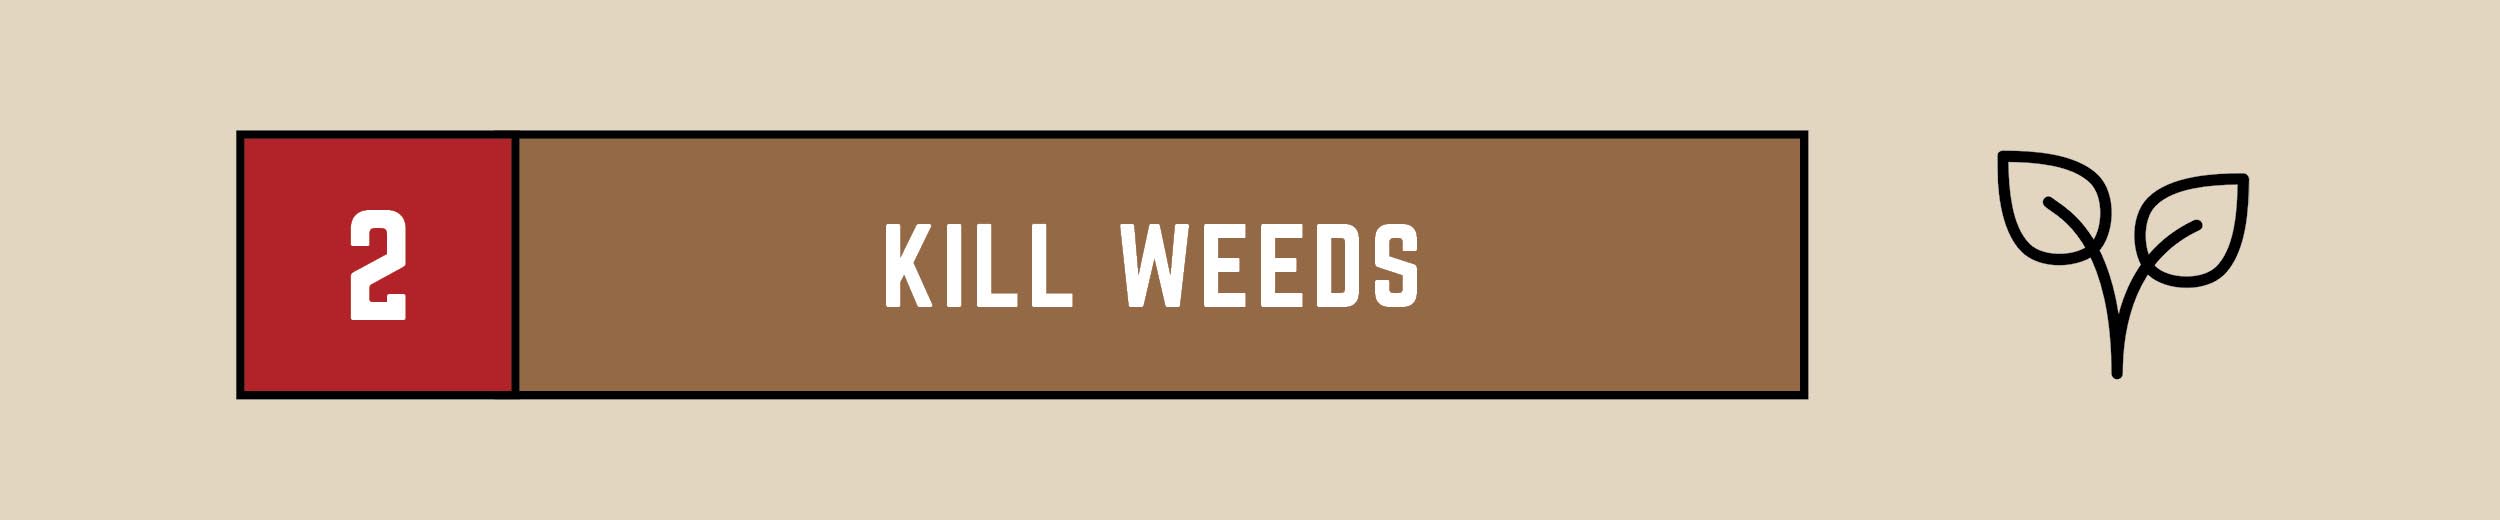 kill weeds text